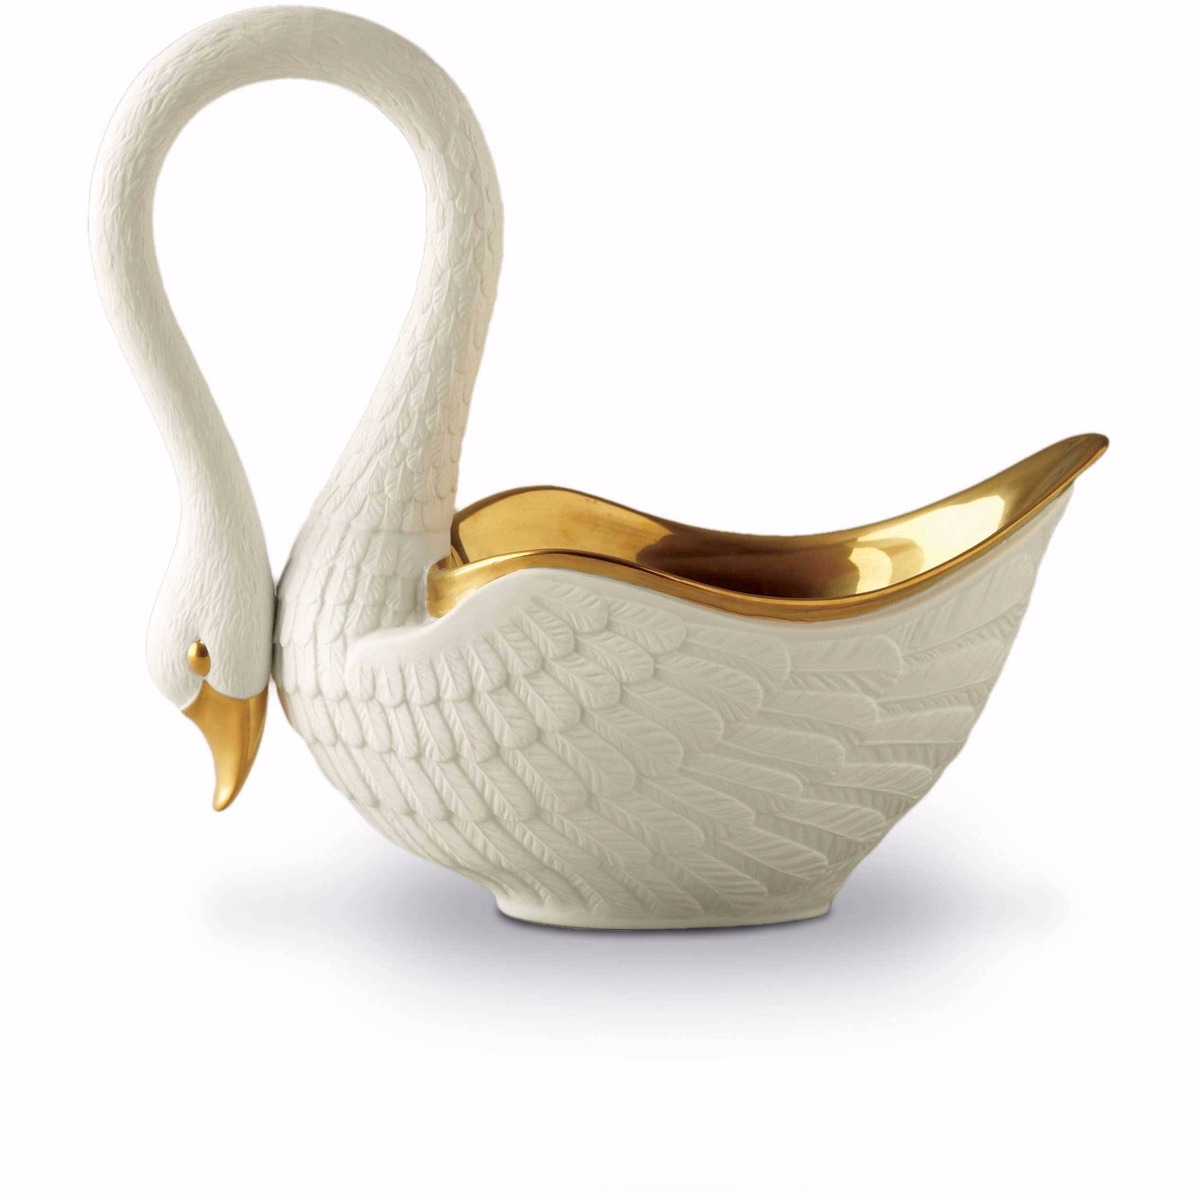 Luxury accessory Swan bowl handmade in London Workshop by Luxuria London